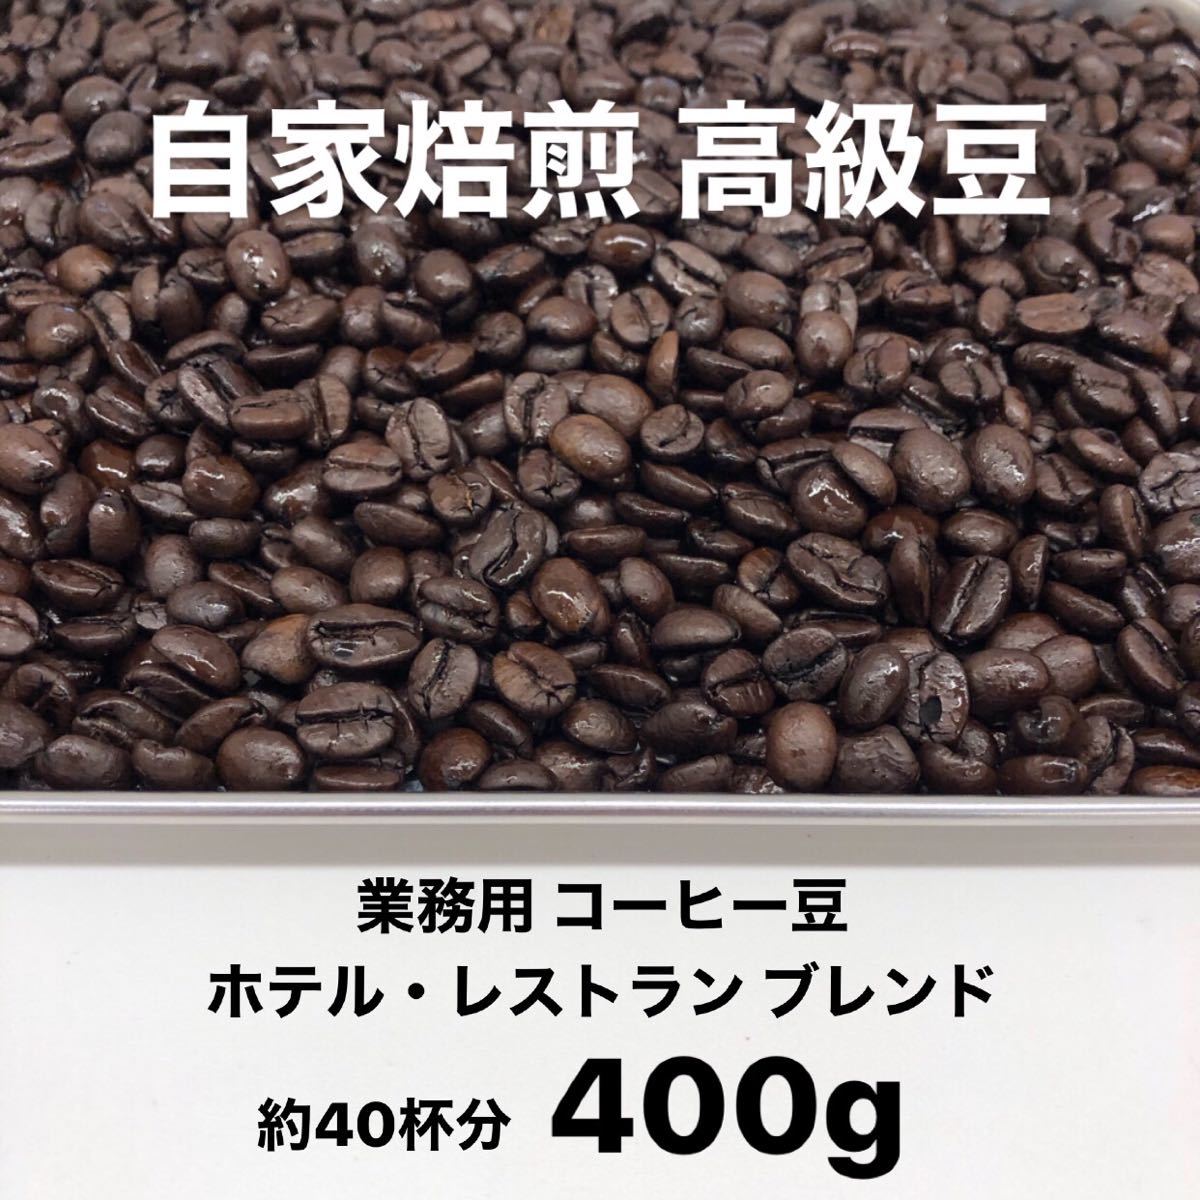 1月の深煎りブレンド 自家焙煎 高級コーヒー豆 400g